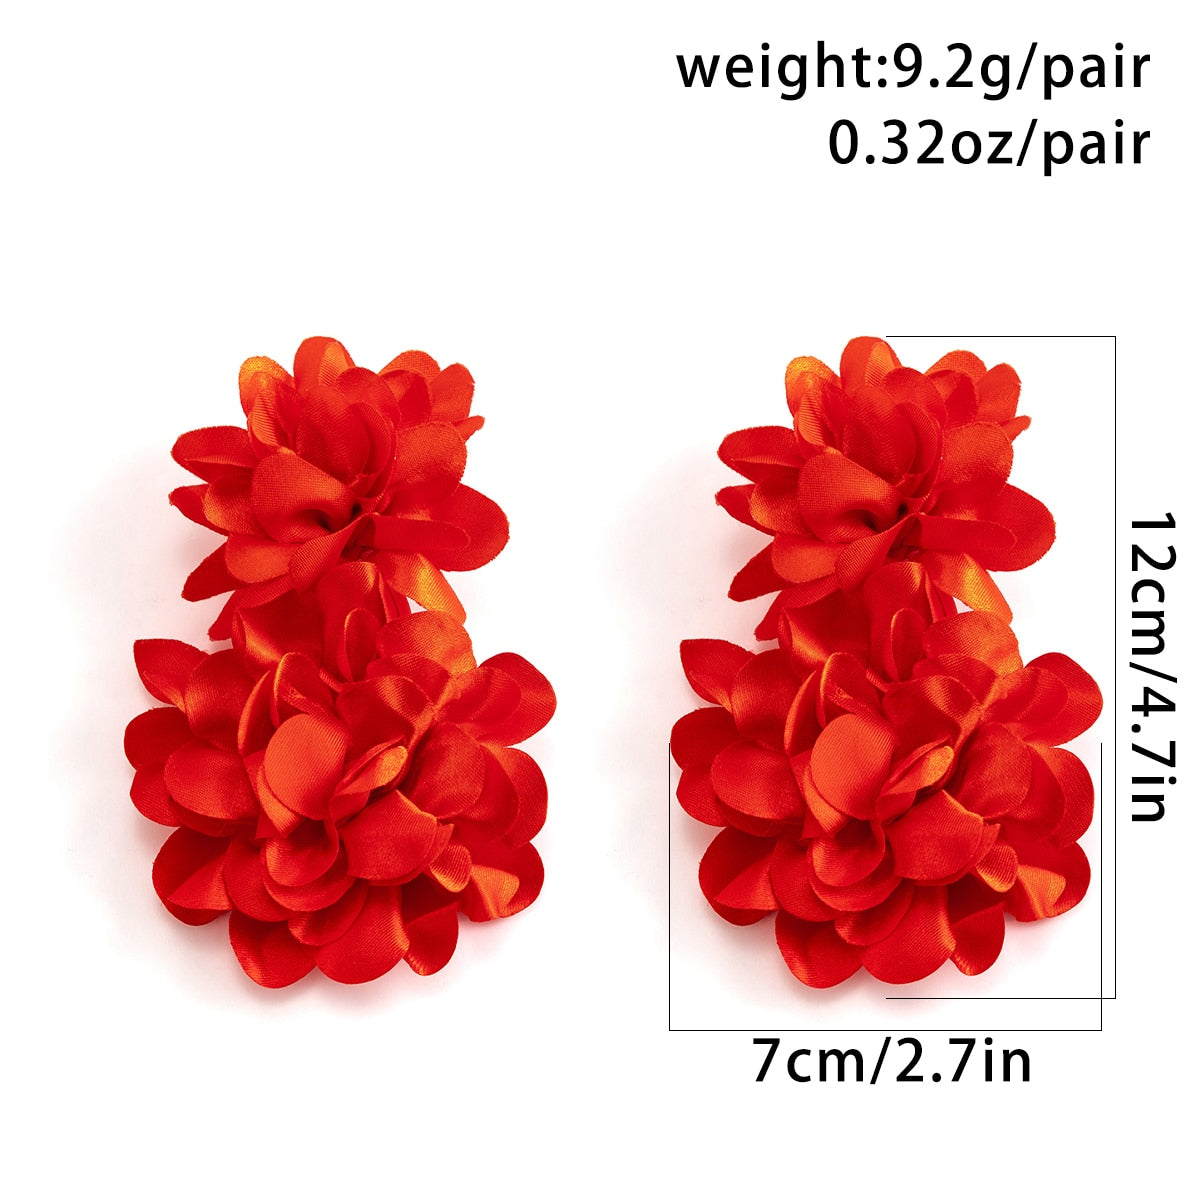 TEEK - Large Double Flower Earrings JEWELRY theteekdotcom   